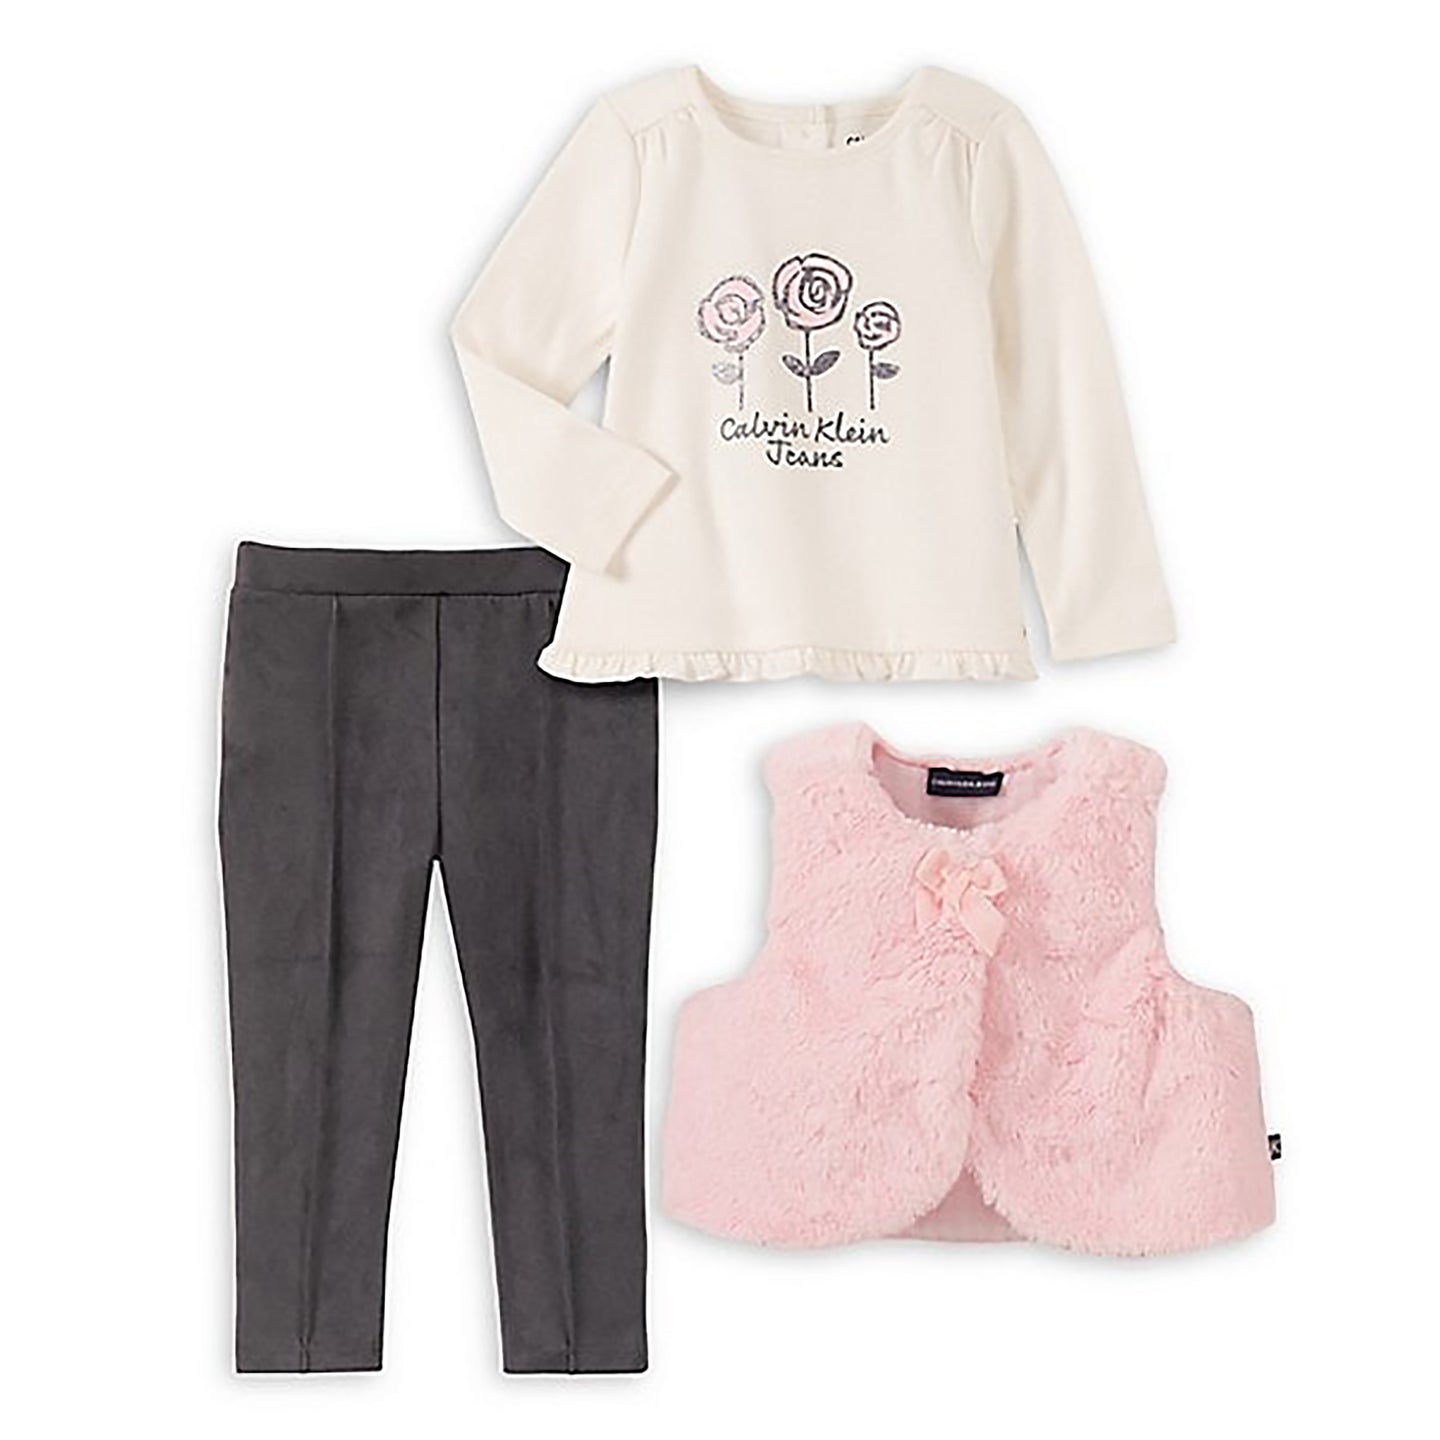 [24m] Calvin Klein Baby Girl's 3-Piece Faux Fur Vest, Top & Pants Set BNWT